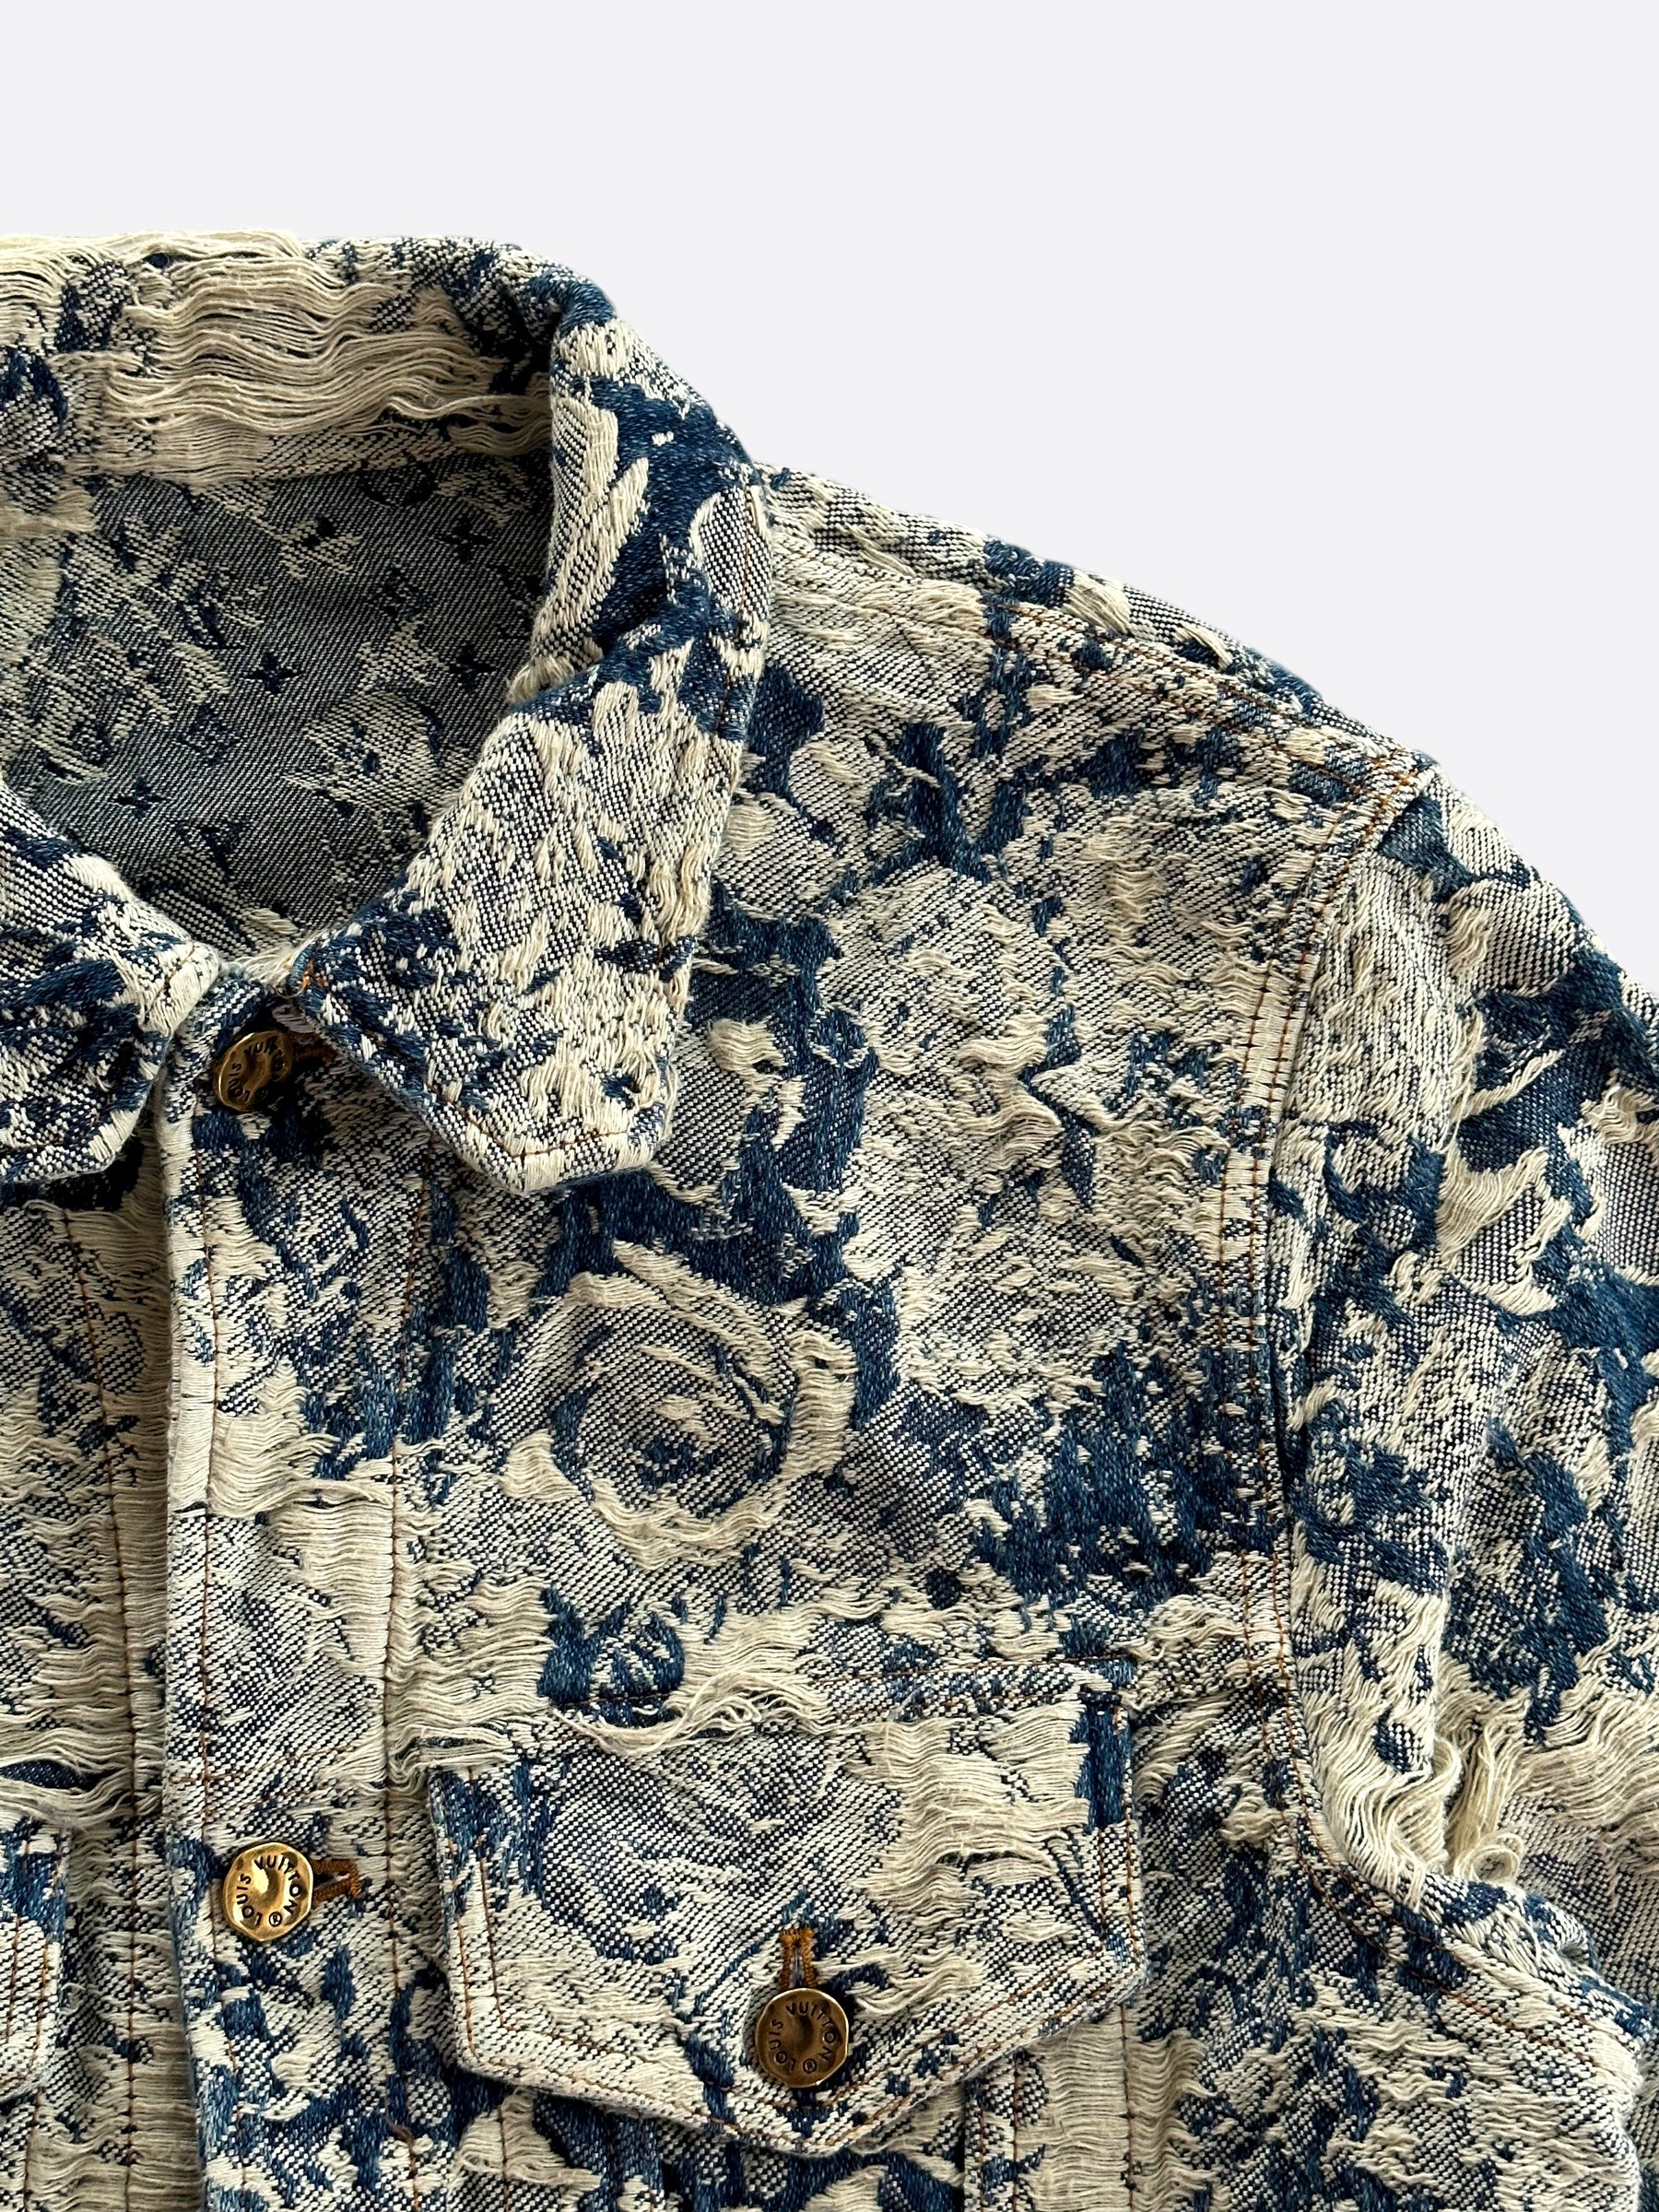 Louis Vuitton Blue Floral Distressed Denim Jacket